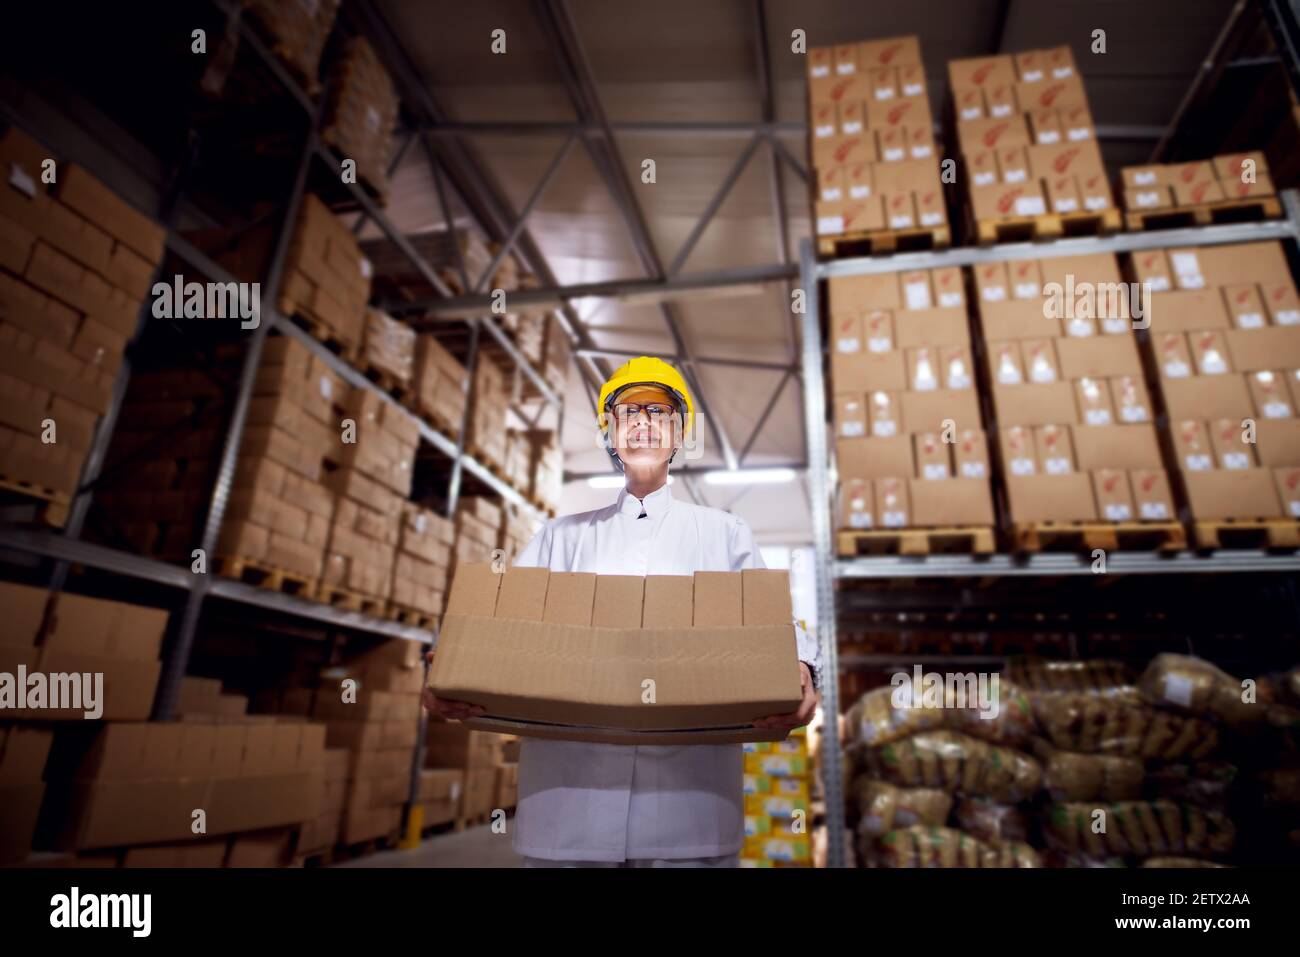 Junge angespannte Arbeiterin in sterilen Tüchern und gelbem Helm trägt einen sehr schweren Stapel brauner Pappkartons aus einem Lagerraum der Einrichtung. Stockfoto